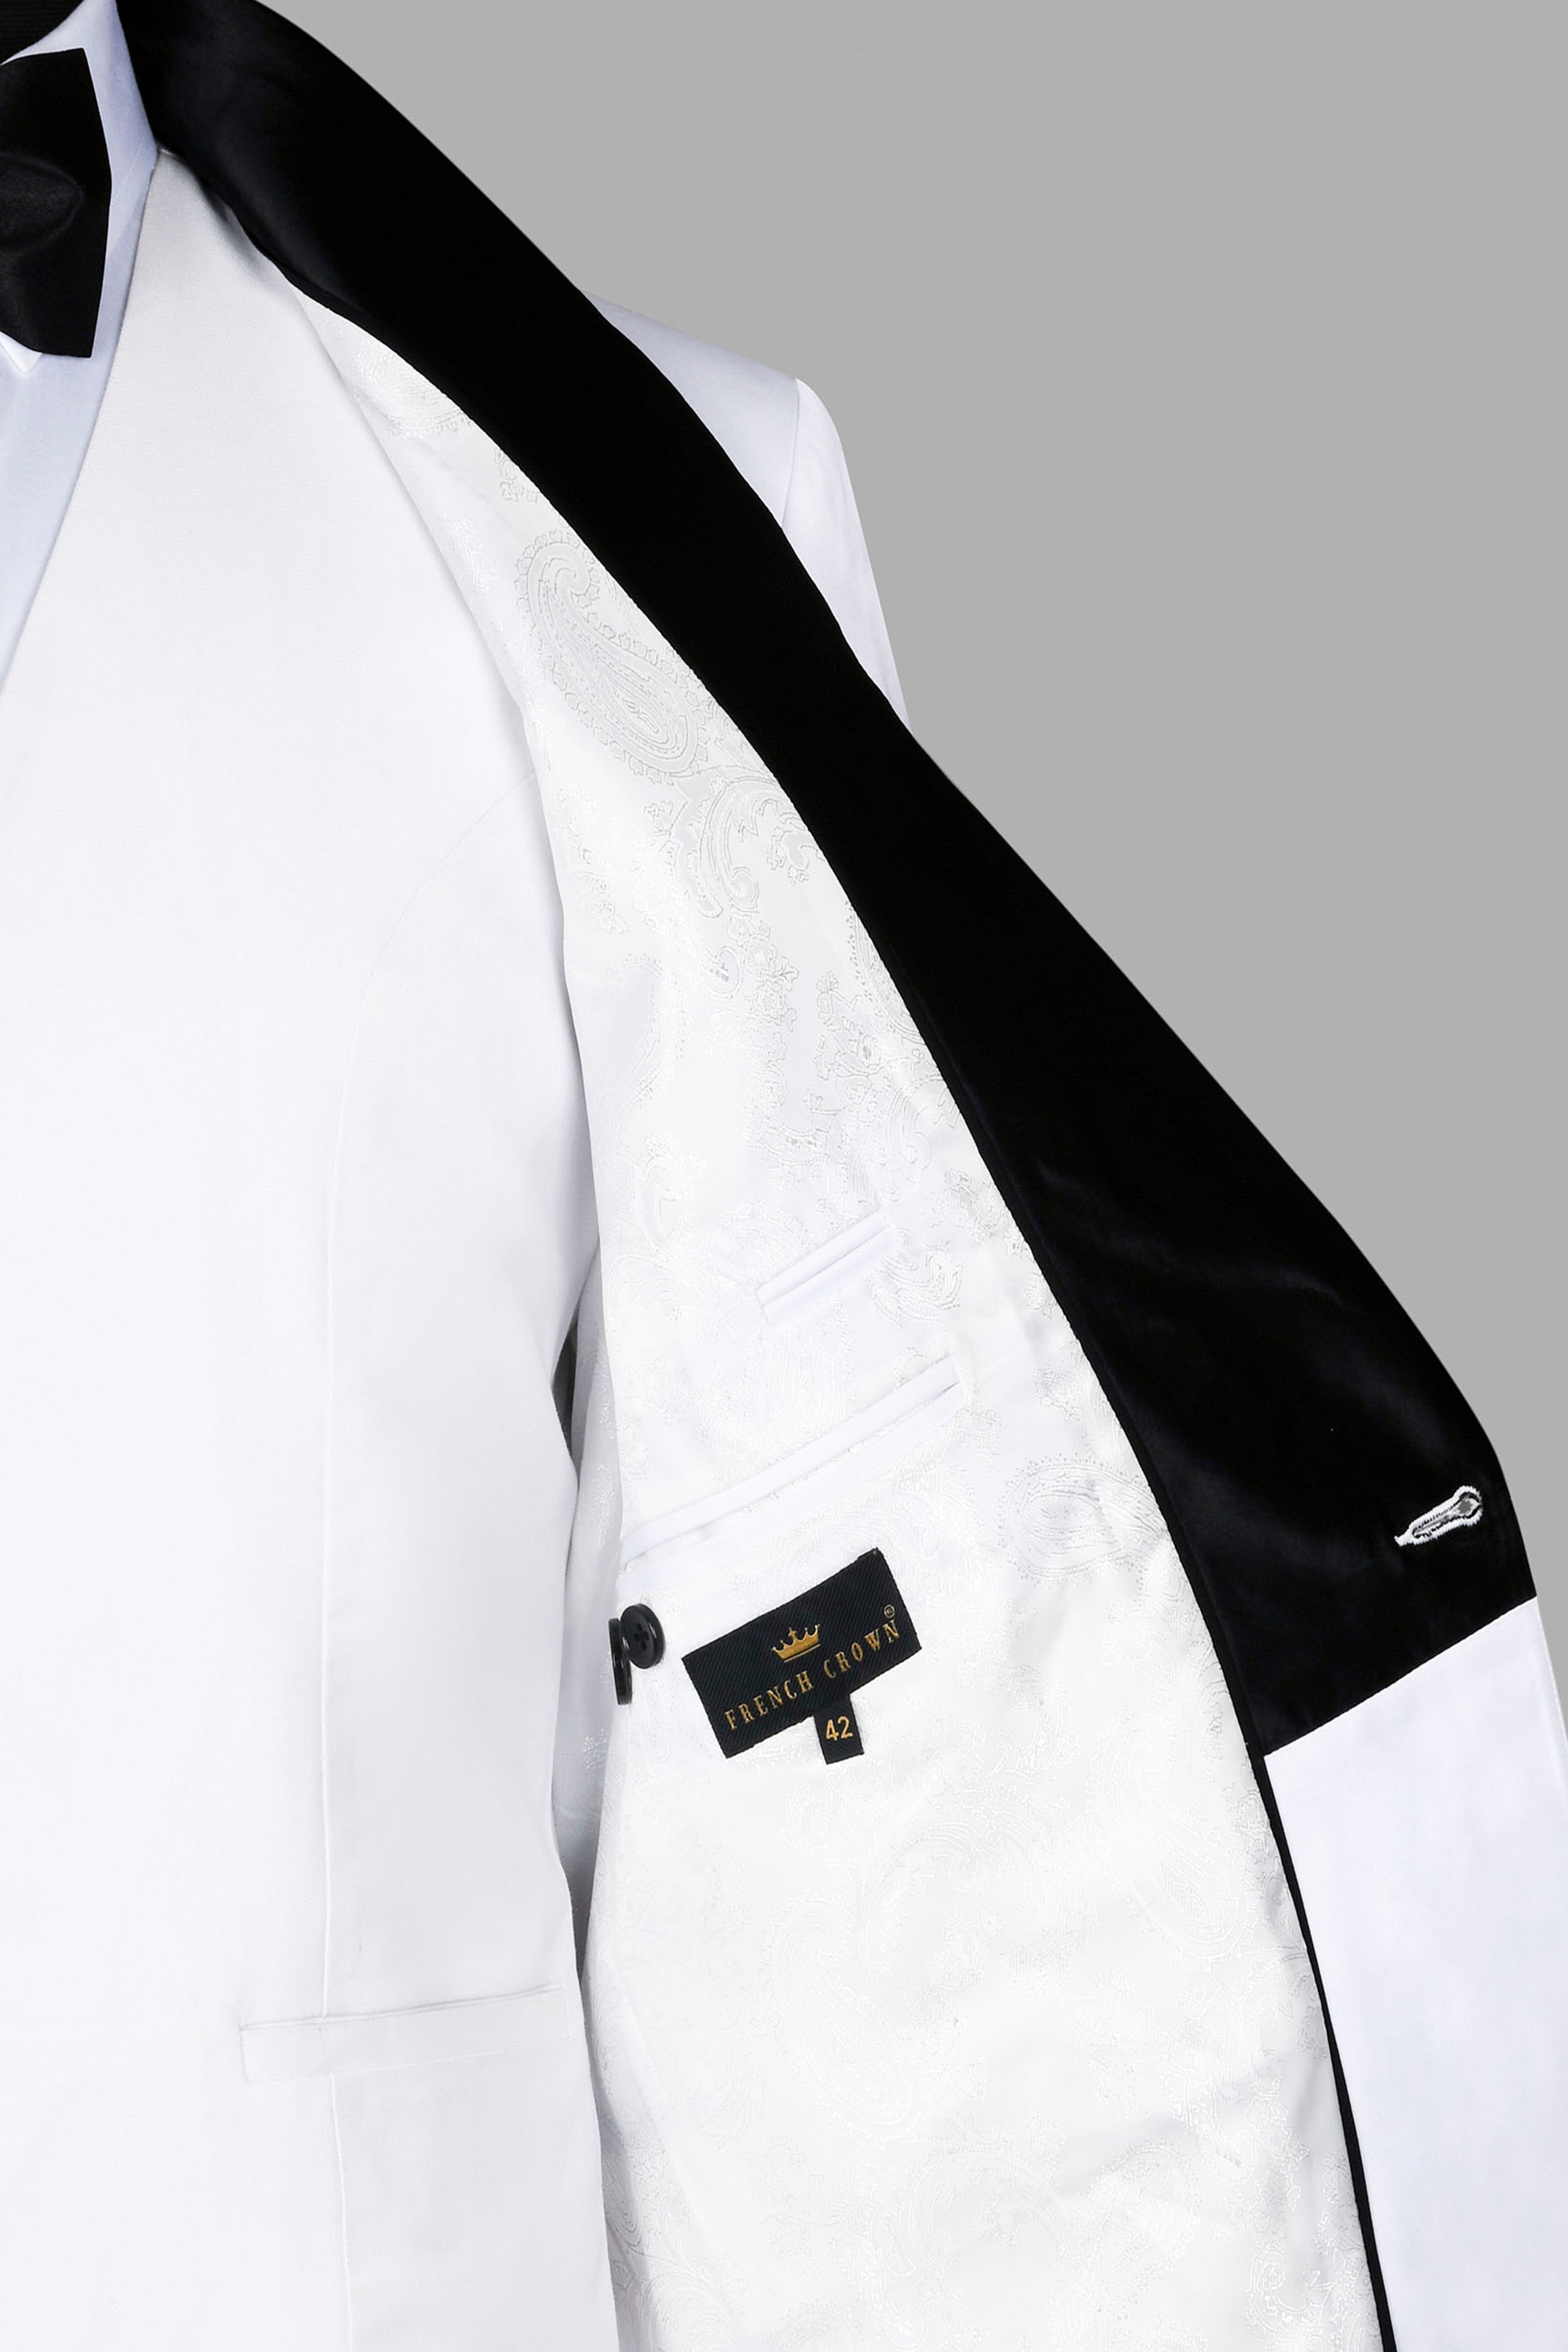 Bright White Textured Premium Wool Blend Wedding Tuxedo Blazer For